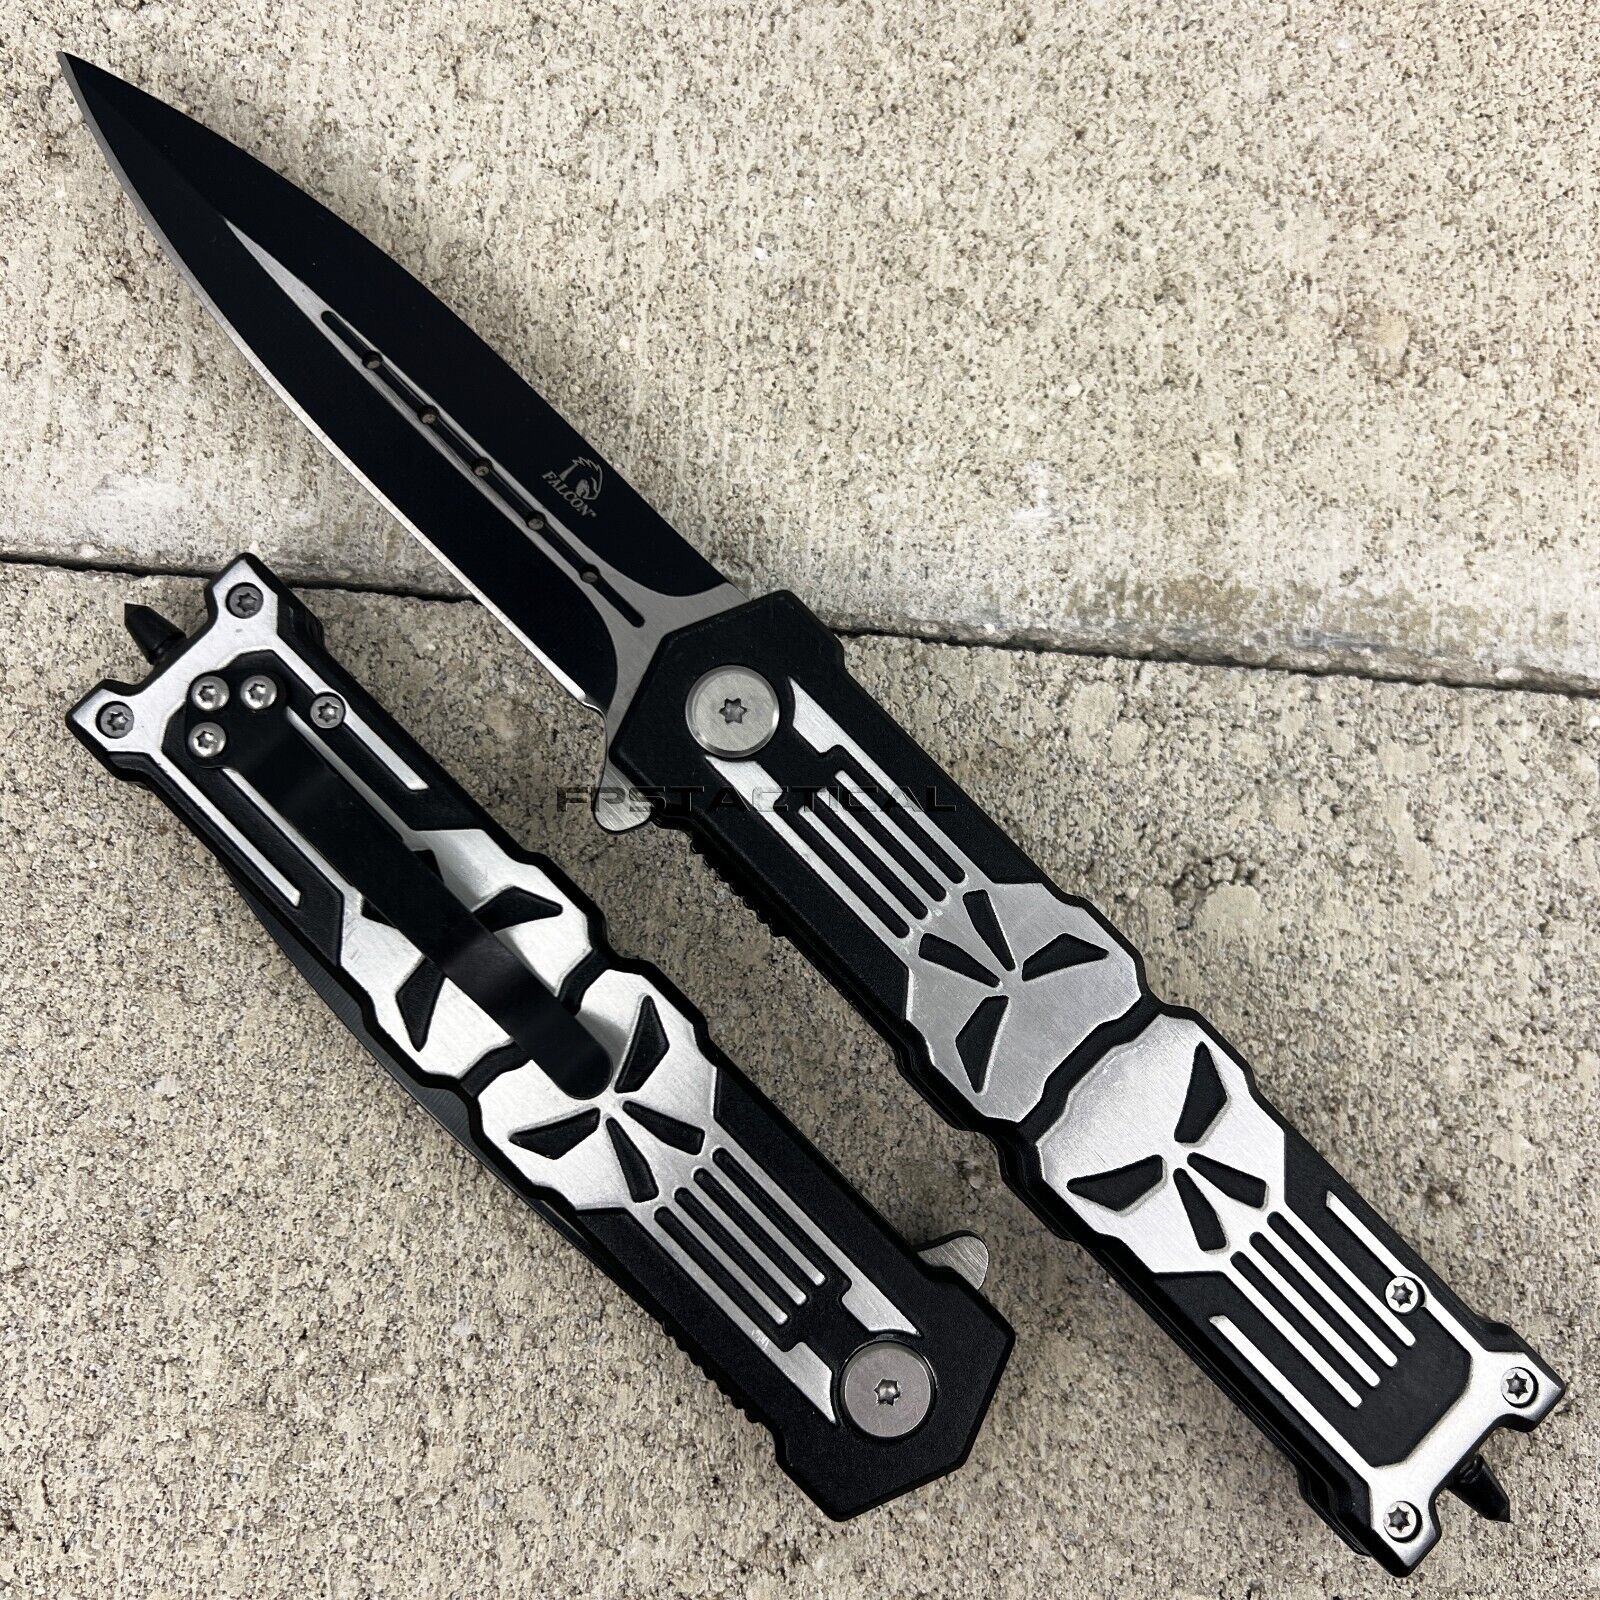 Falcon 3D Molded Punisher Skull Spring Assist Stiletto Knife Black & Bare Metal